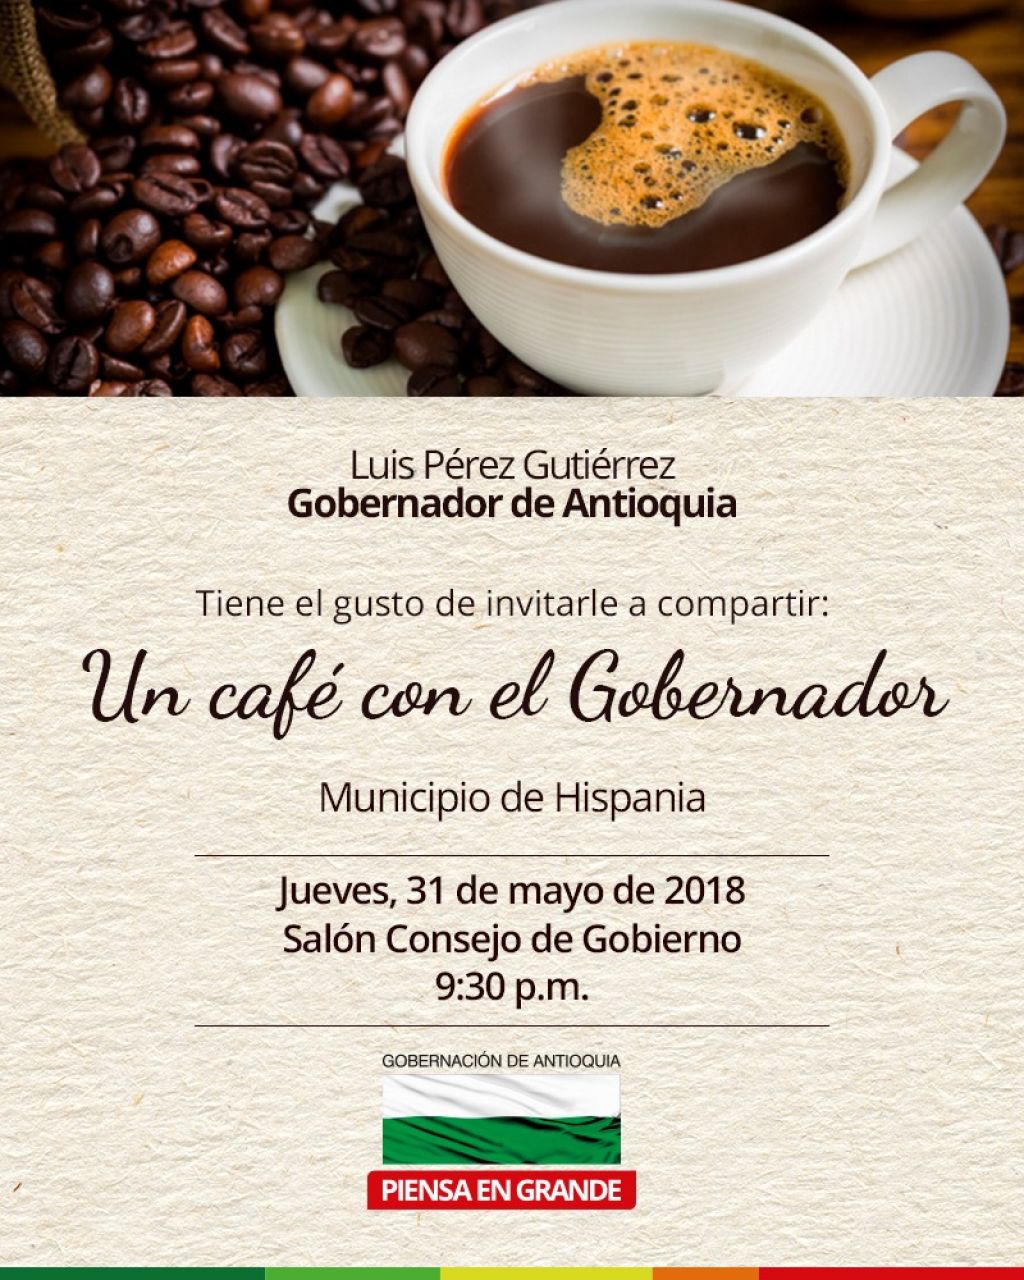 Invitación: Un café con el Gobernador desde el municipio de Hispania